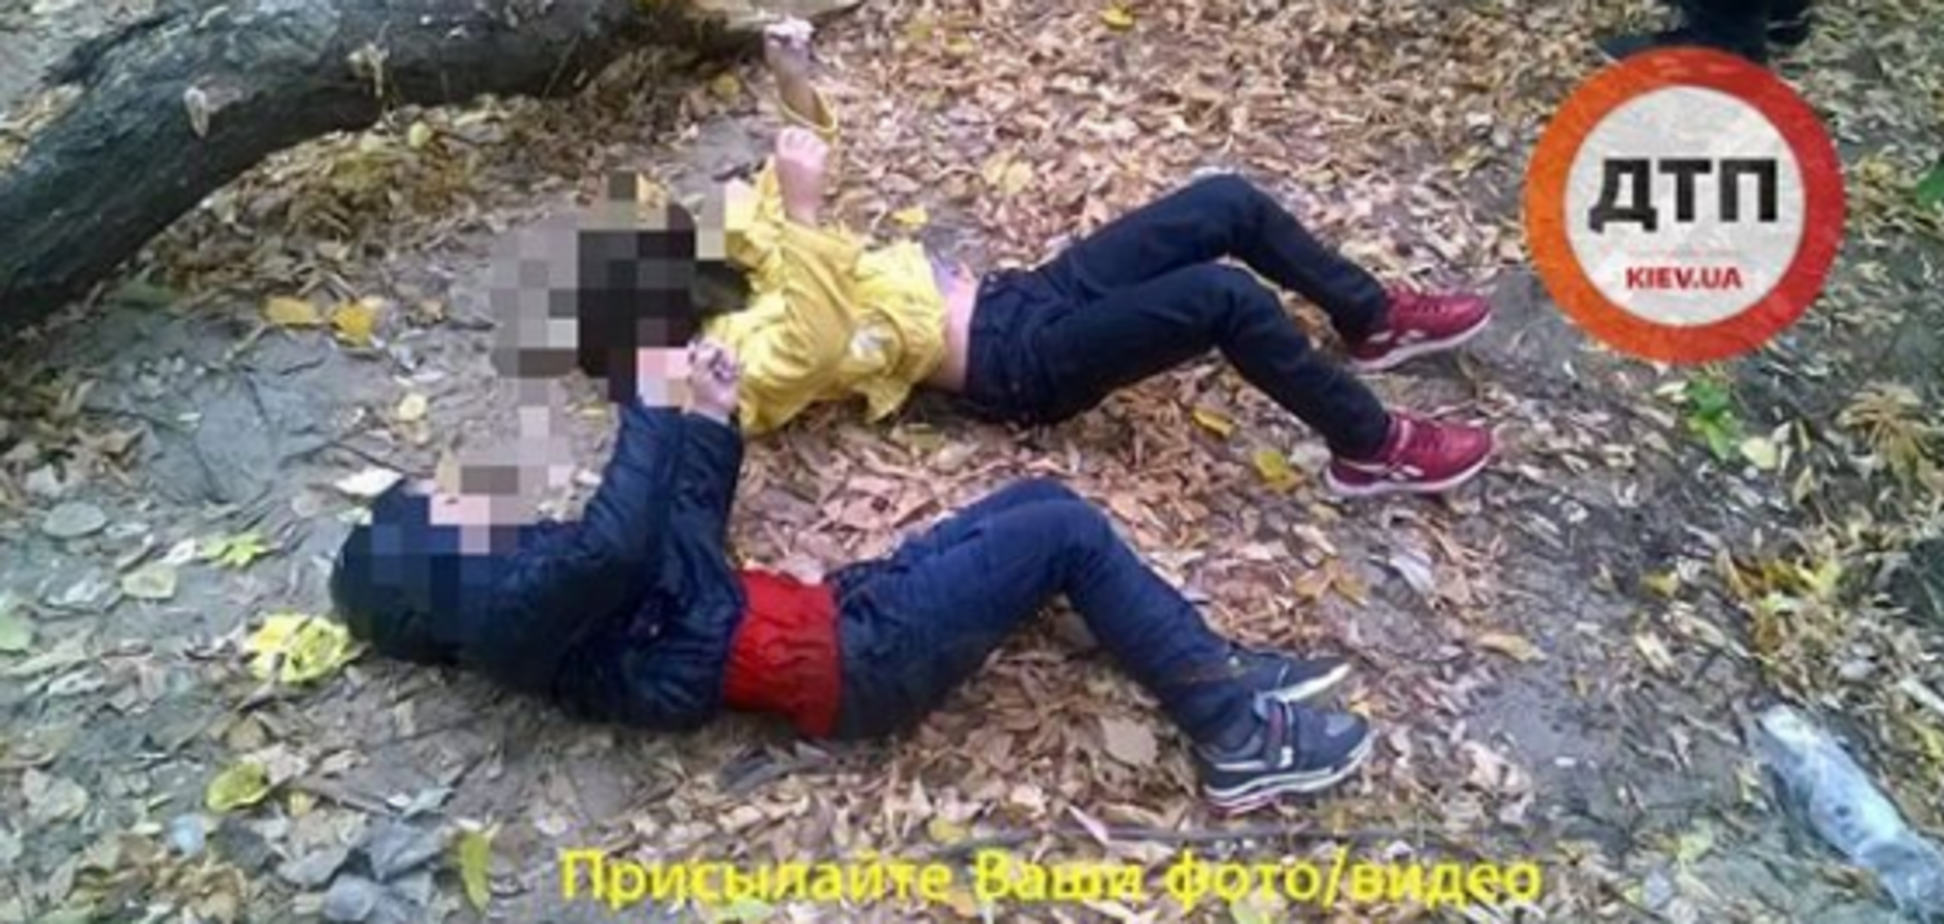 Вбивство дітей у Києві: психолог поставила матері діагноз